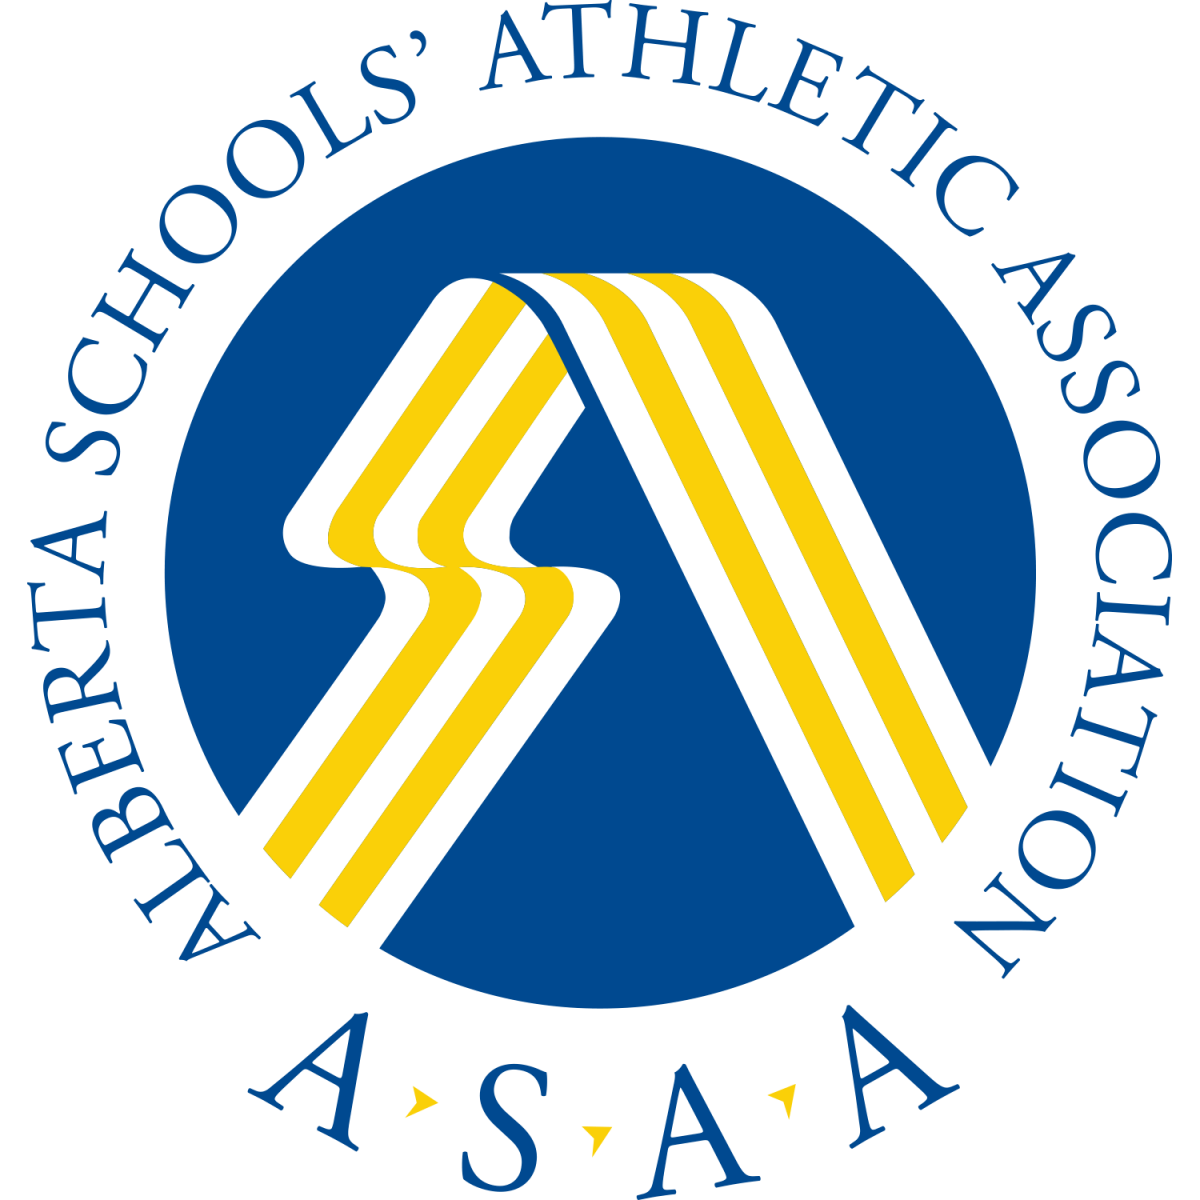 ASAA Logo